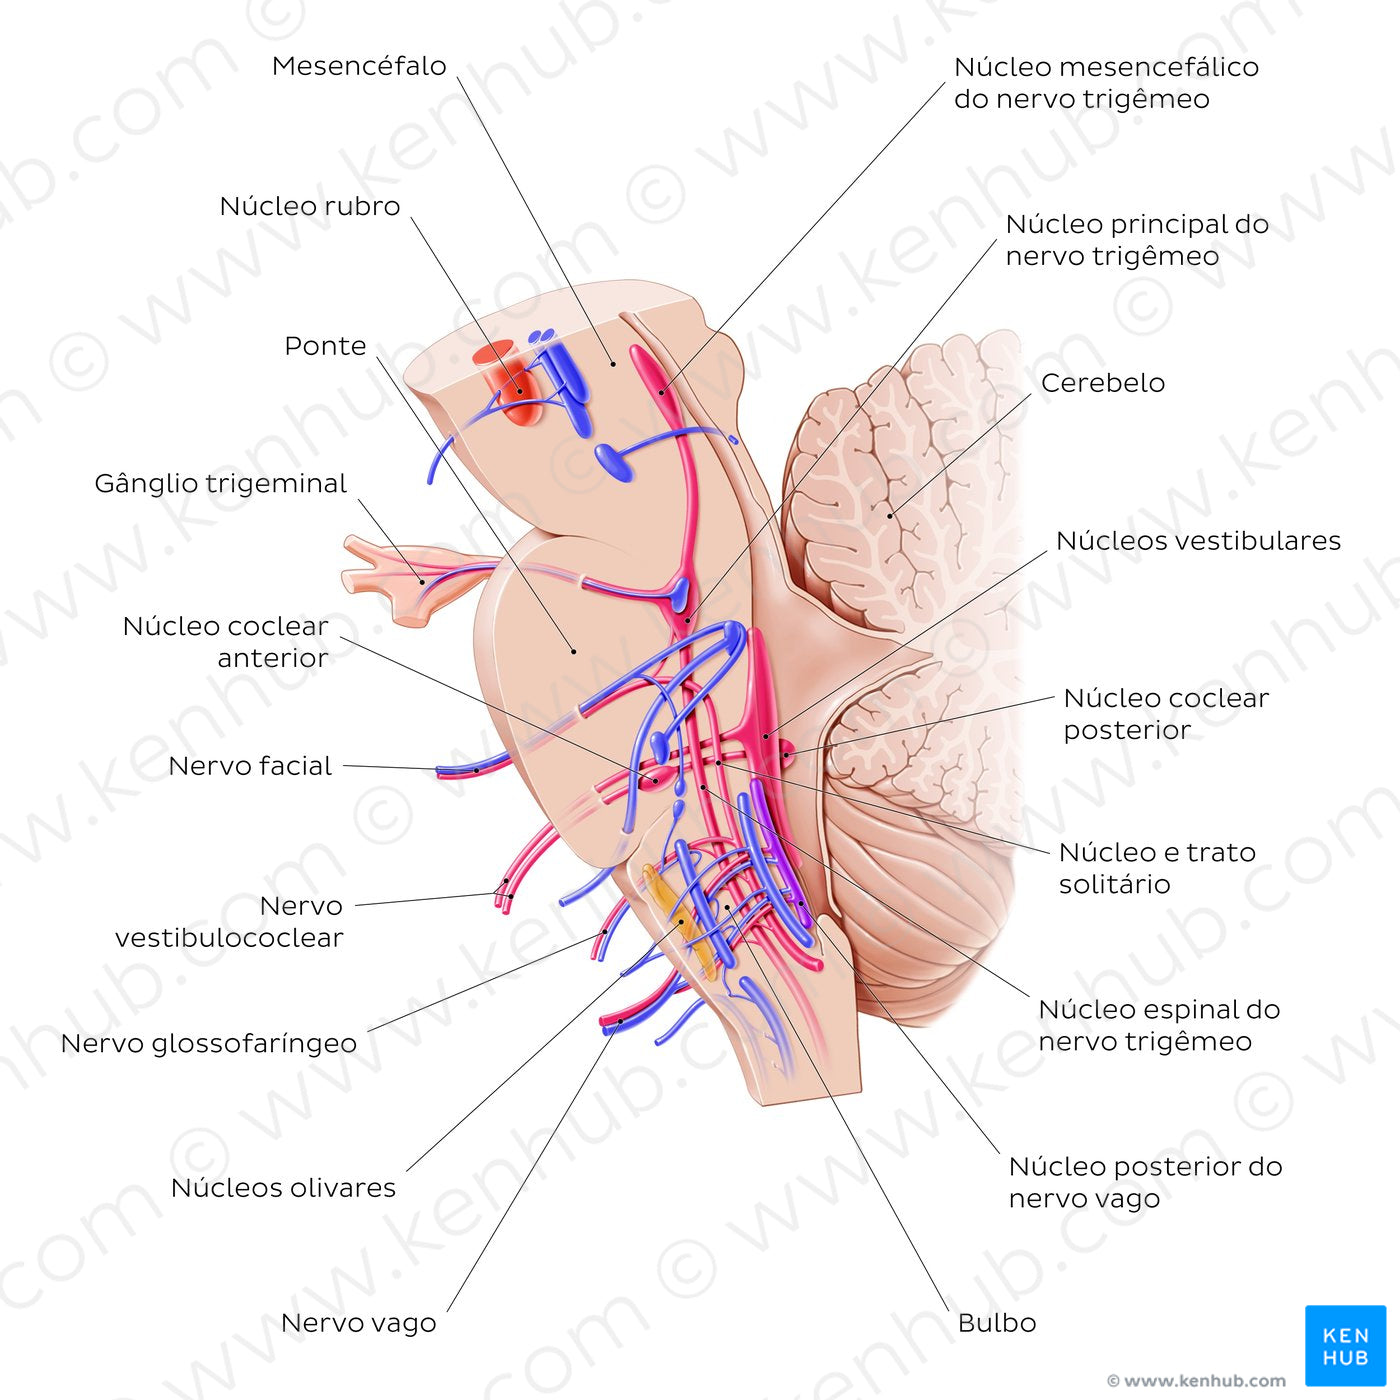 Cranial nerve nuclei - sagittal view (afferent) (Portuguese)